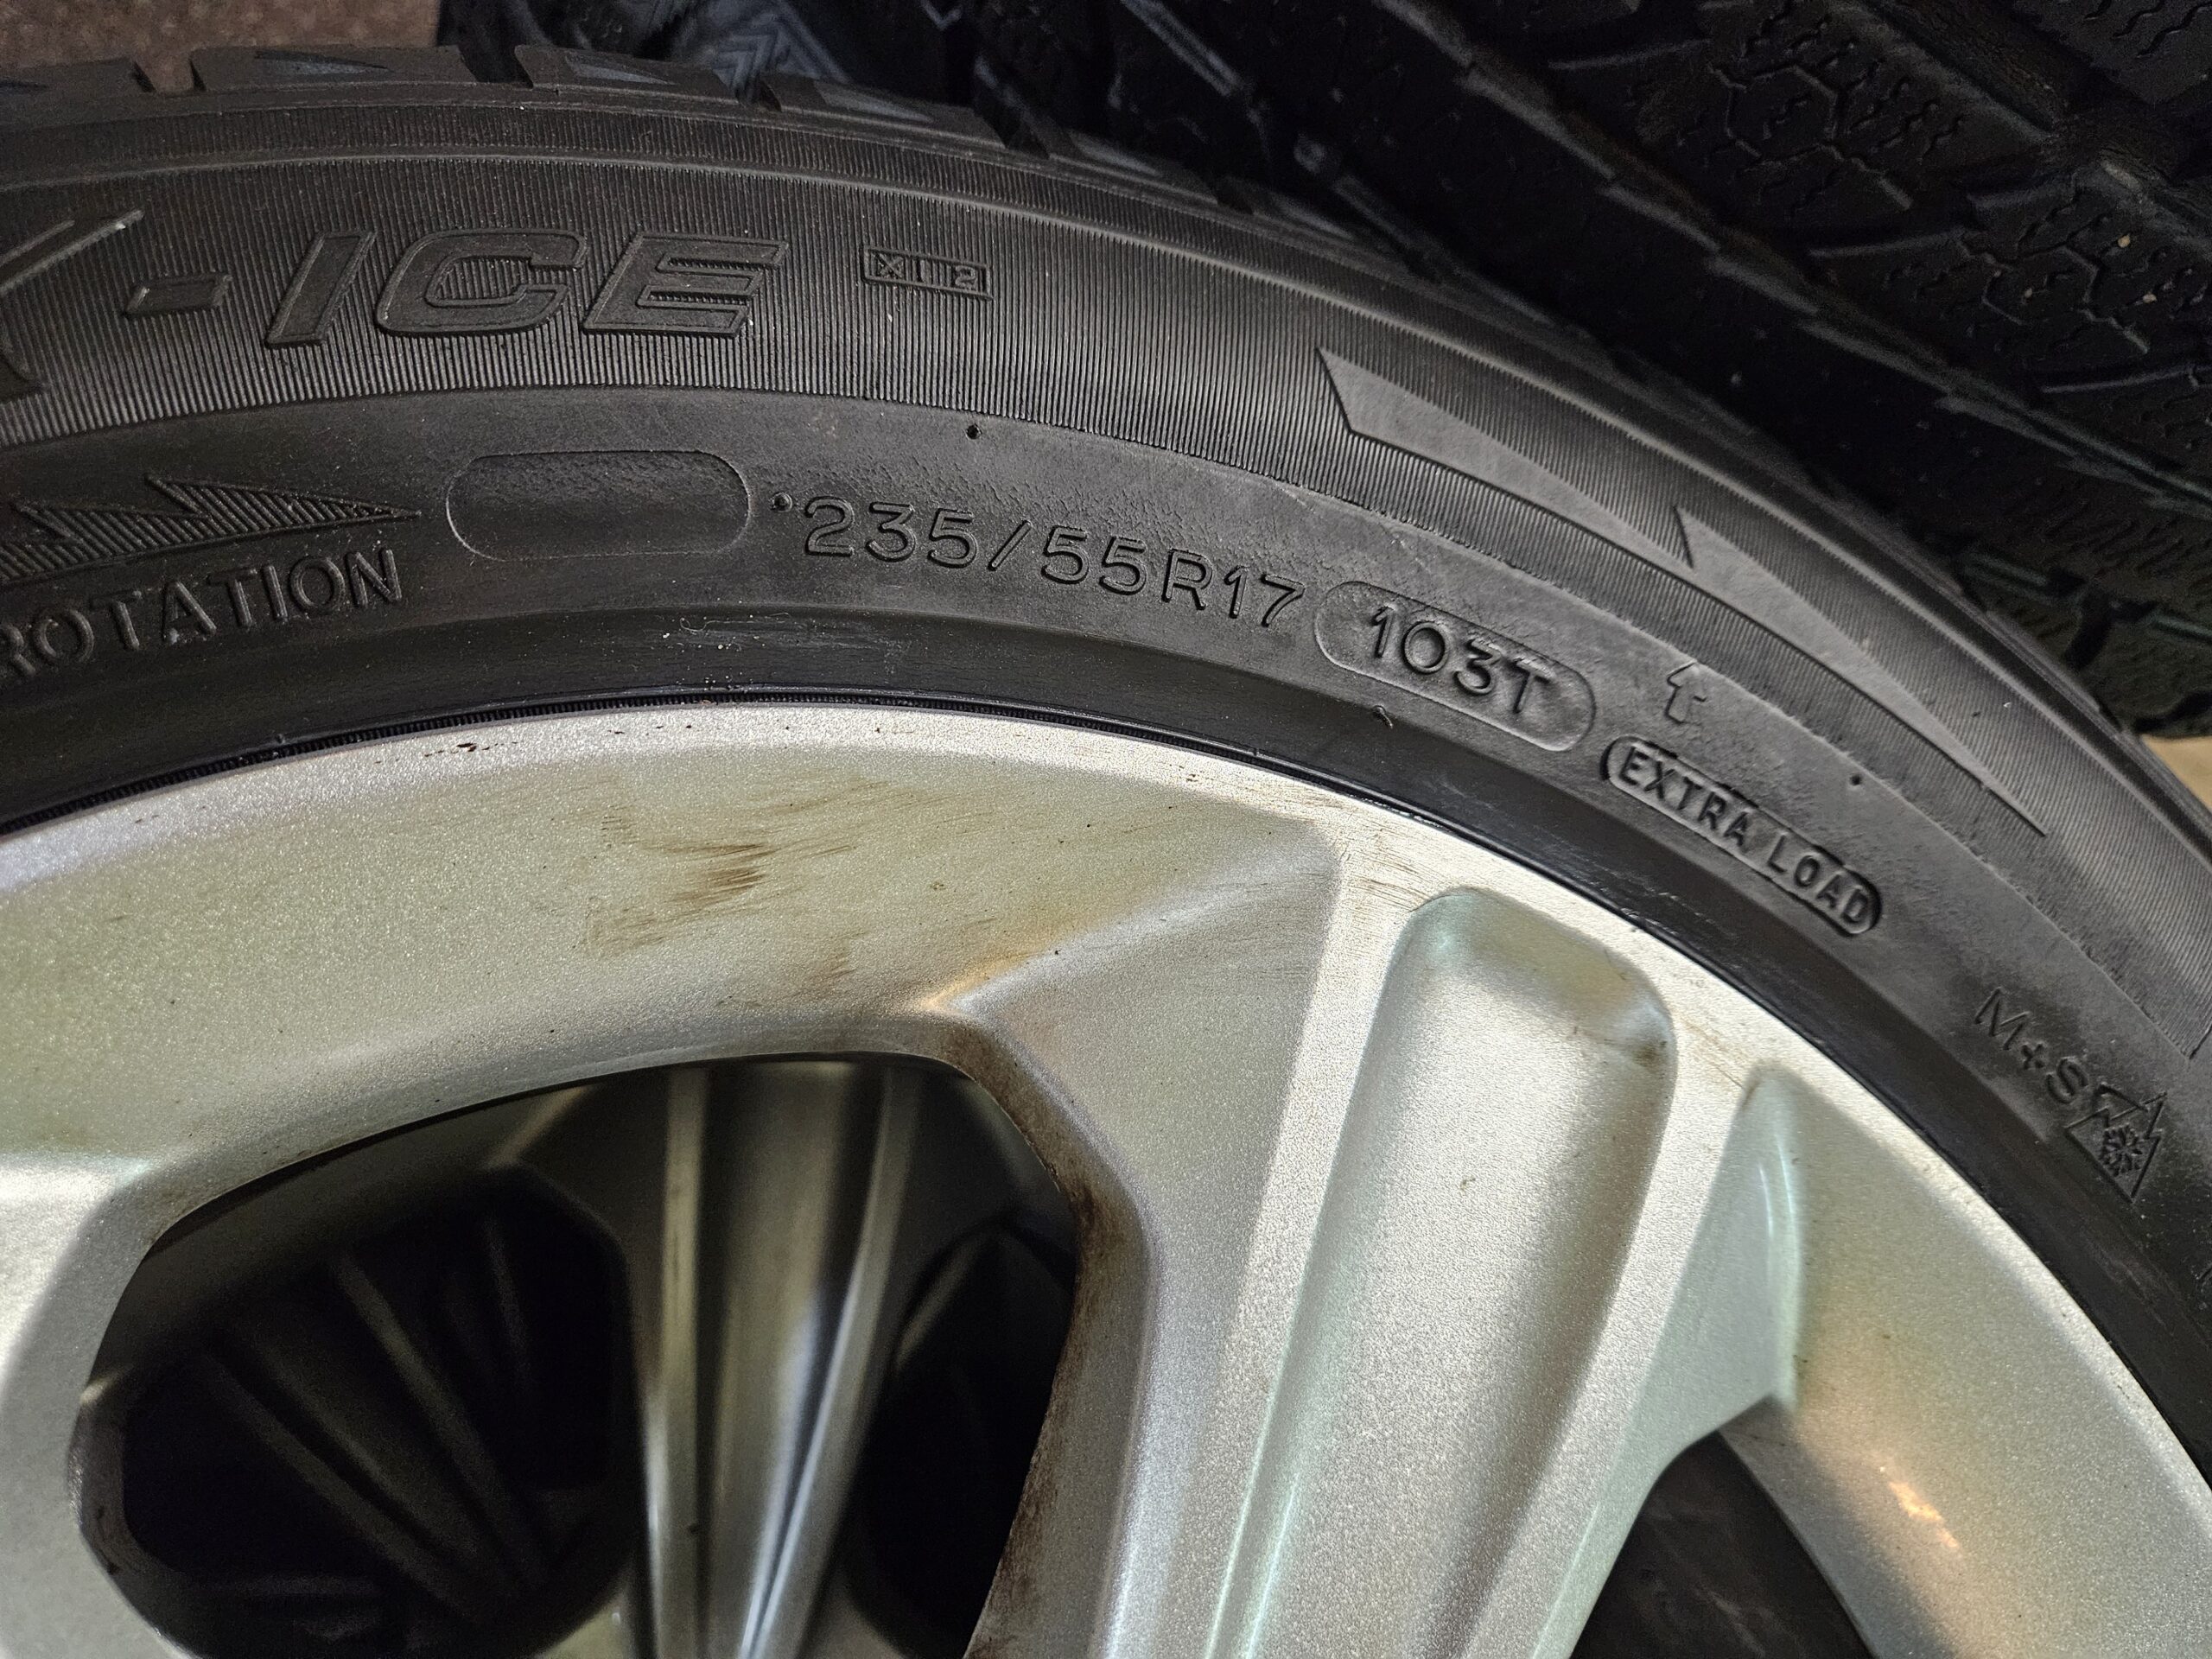 235/55R17 Michelin Snow Tires on Ford Escape Rims